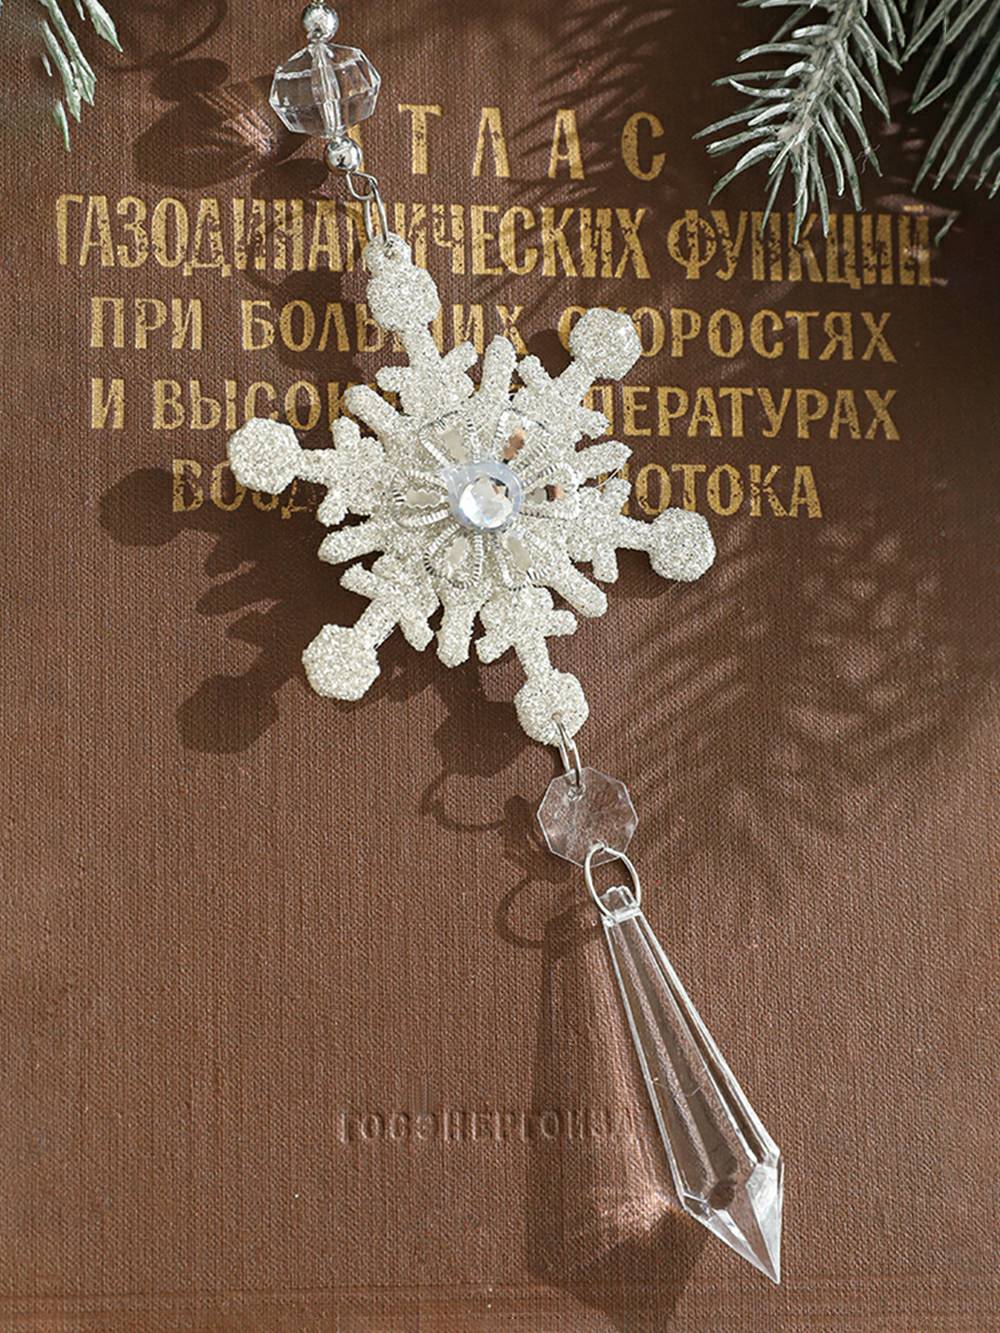 Ornamento de cordão de floco de neve com brilho de cristal